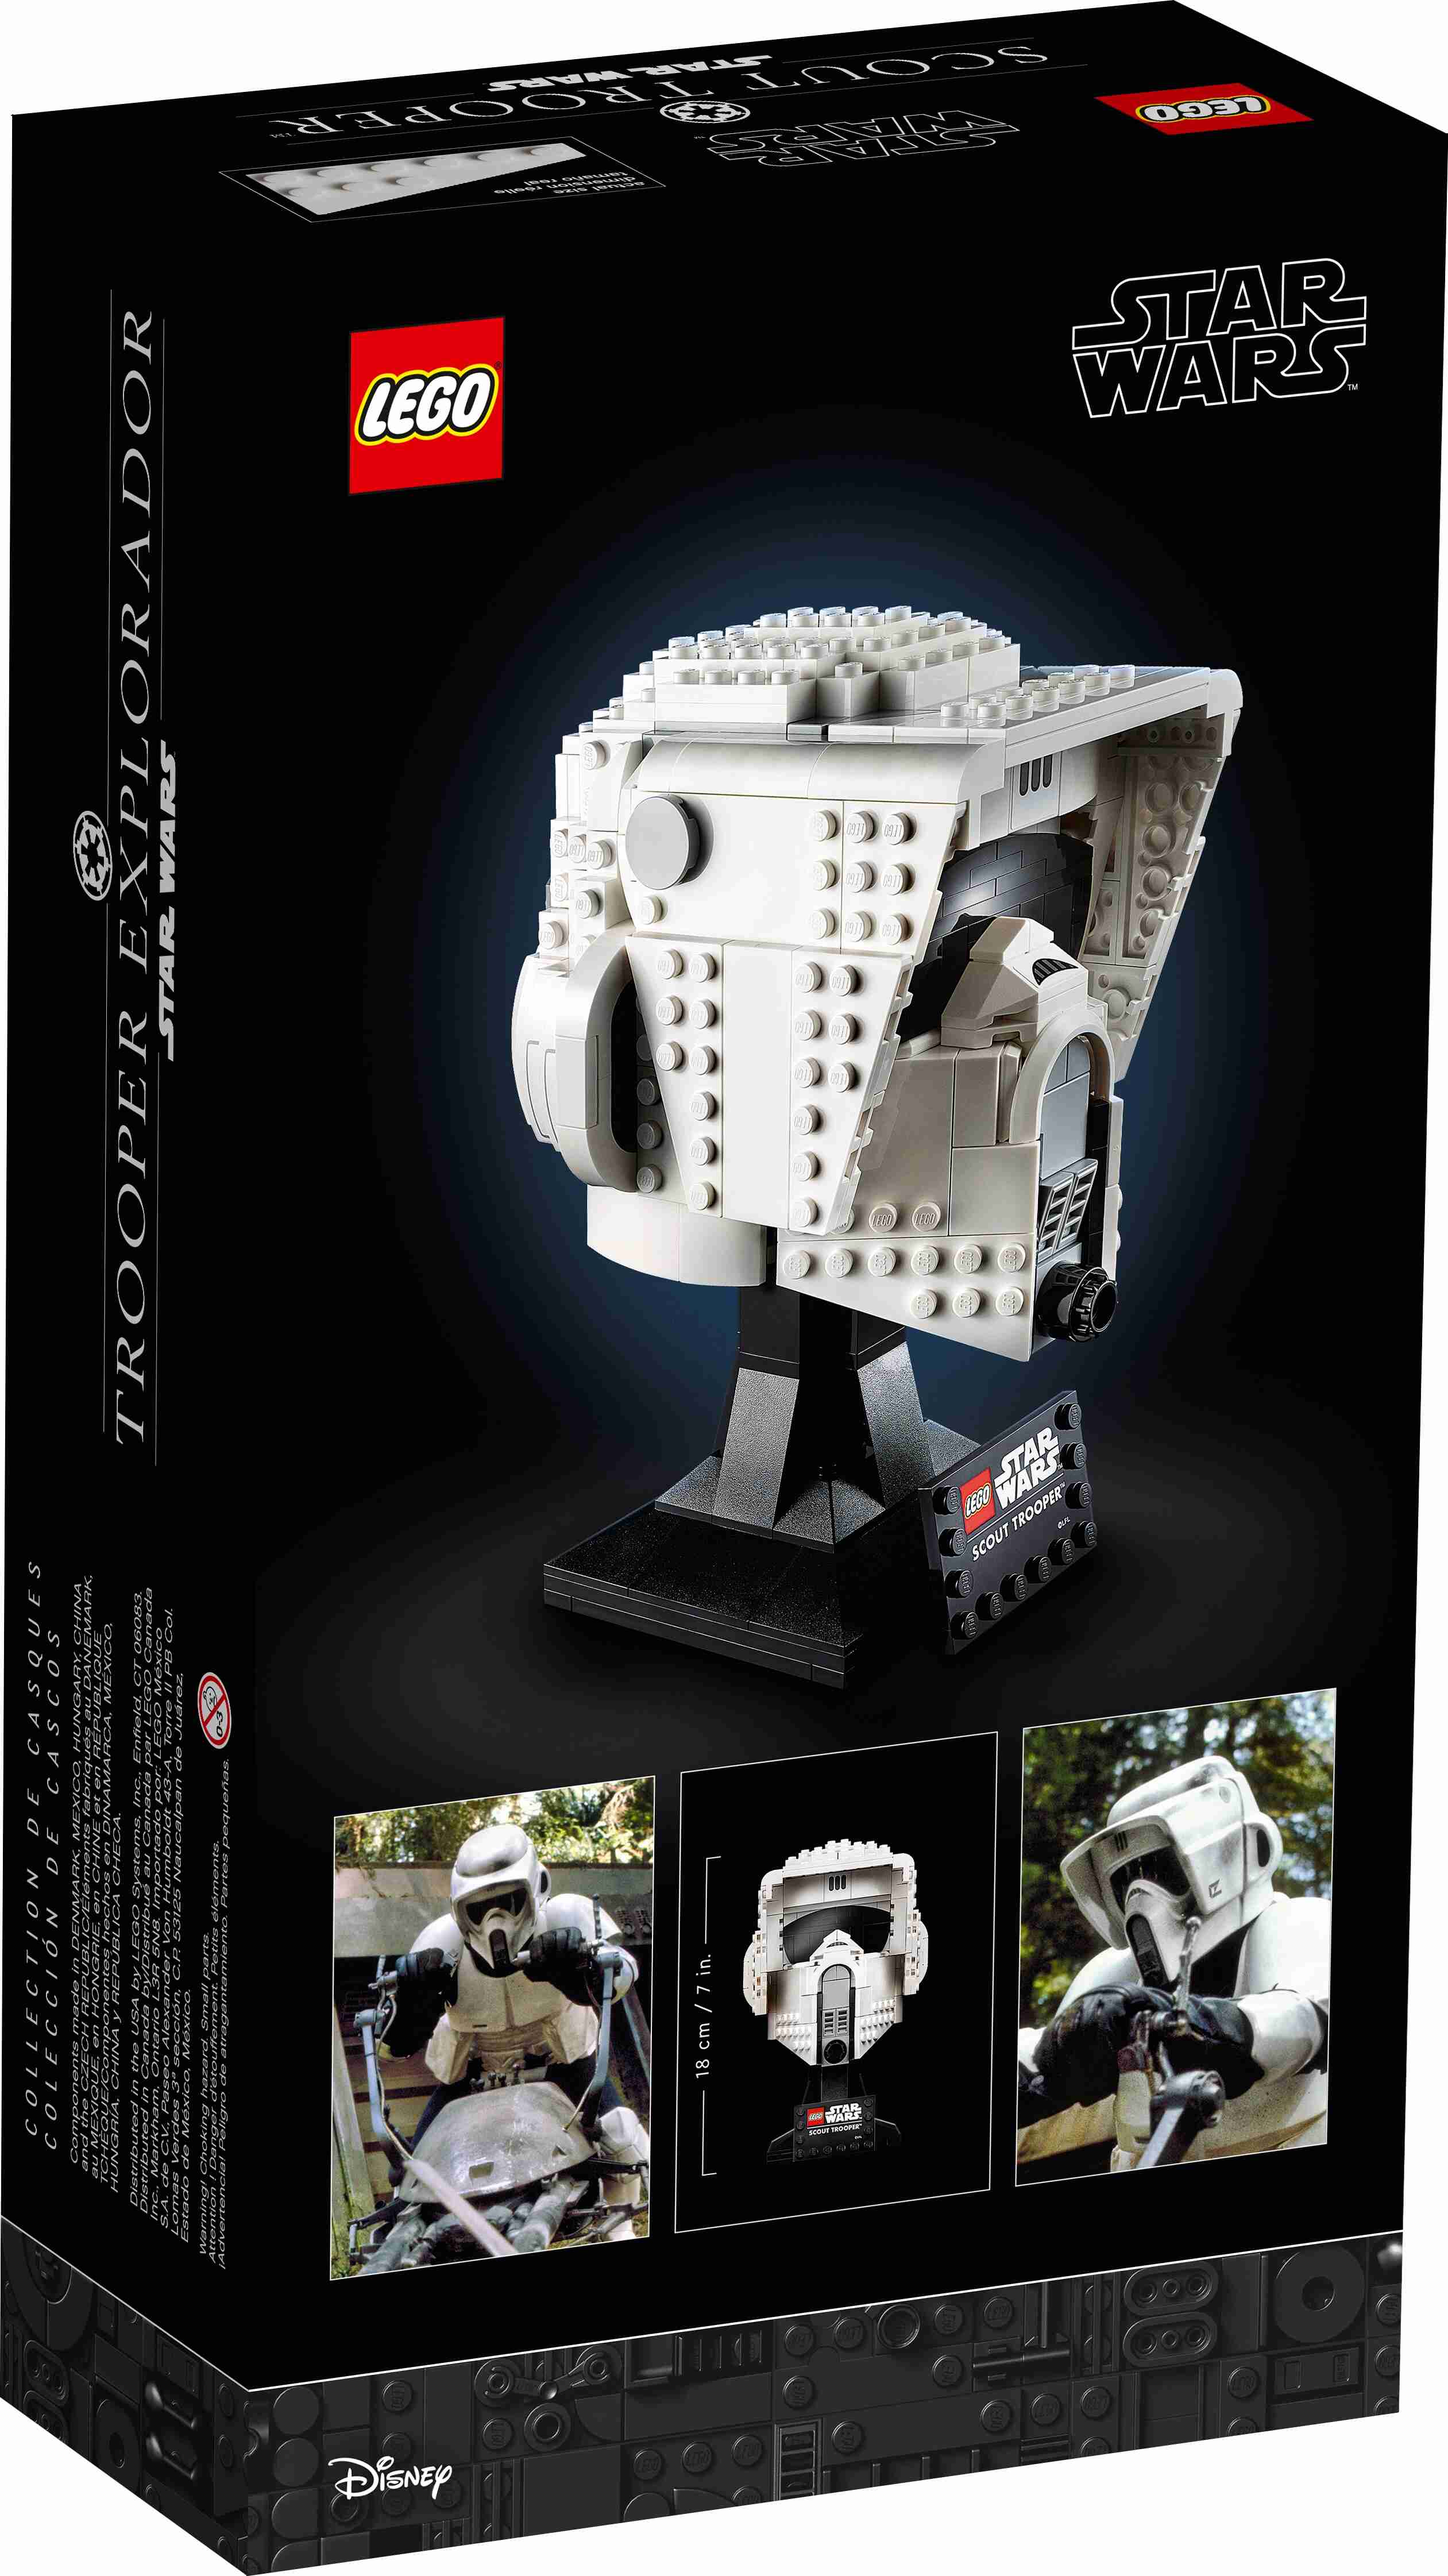 LEGO 75305 Star Wars Scout Trooper Helm, für Erwachsene zum Bauen u. Ausstellen